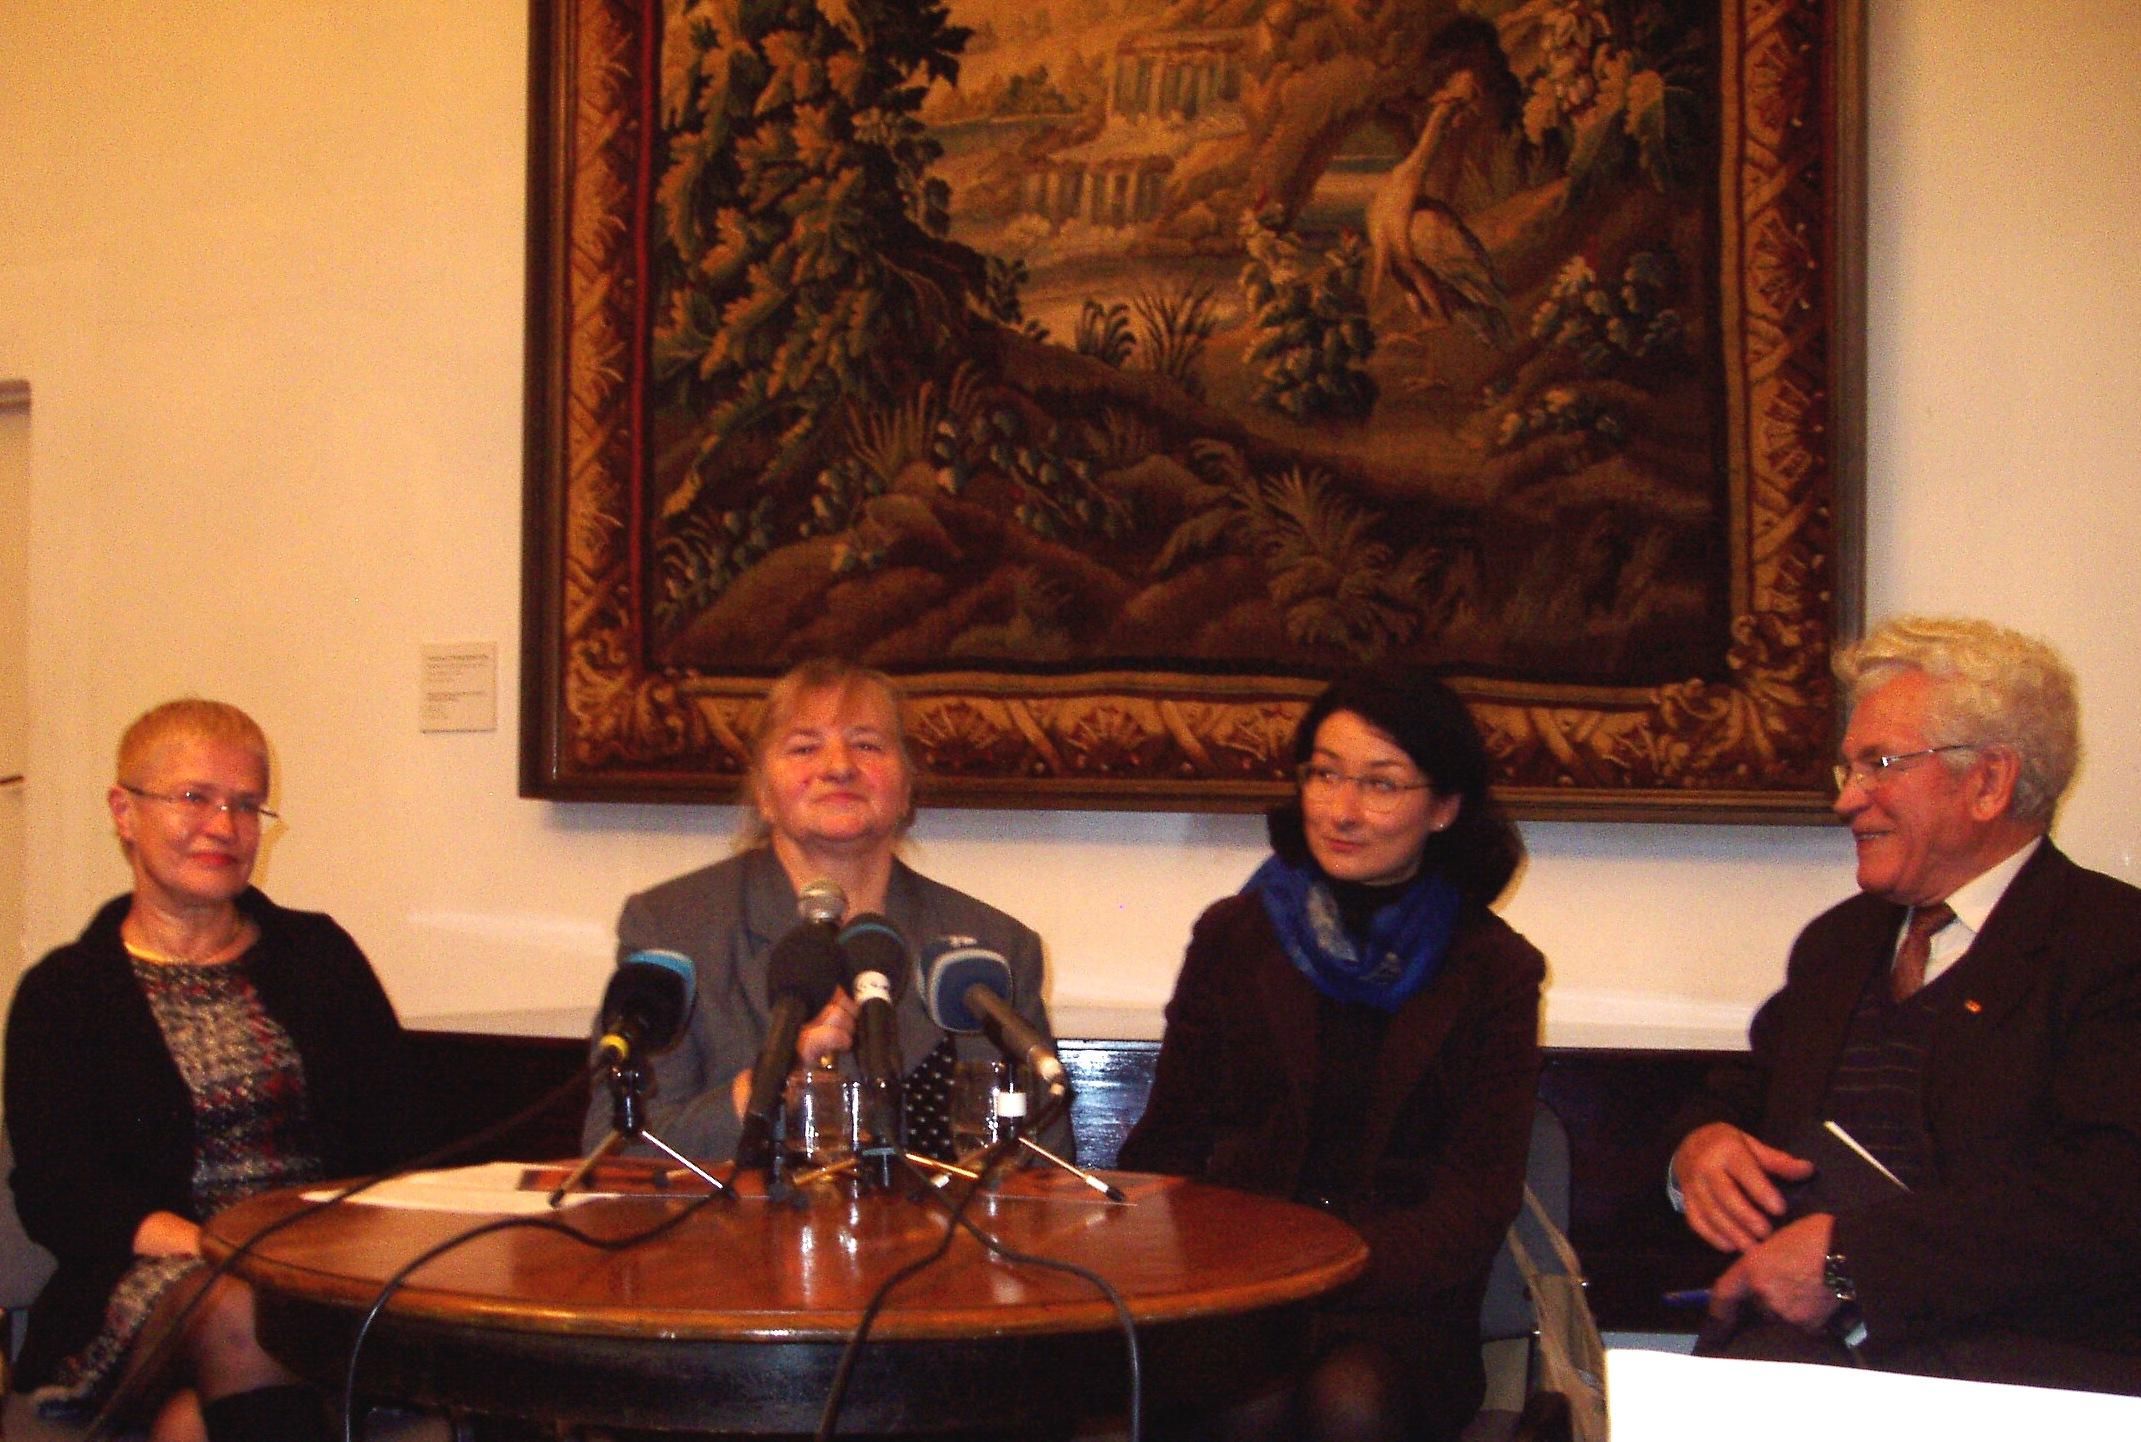 Пресс-конференция в Художественном музее Литвы. В центре - Янина Билотене и Тояна Рачюнайте, справа - Ромуальдас Будрис.